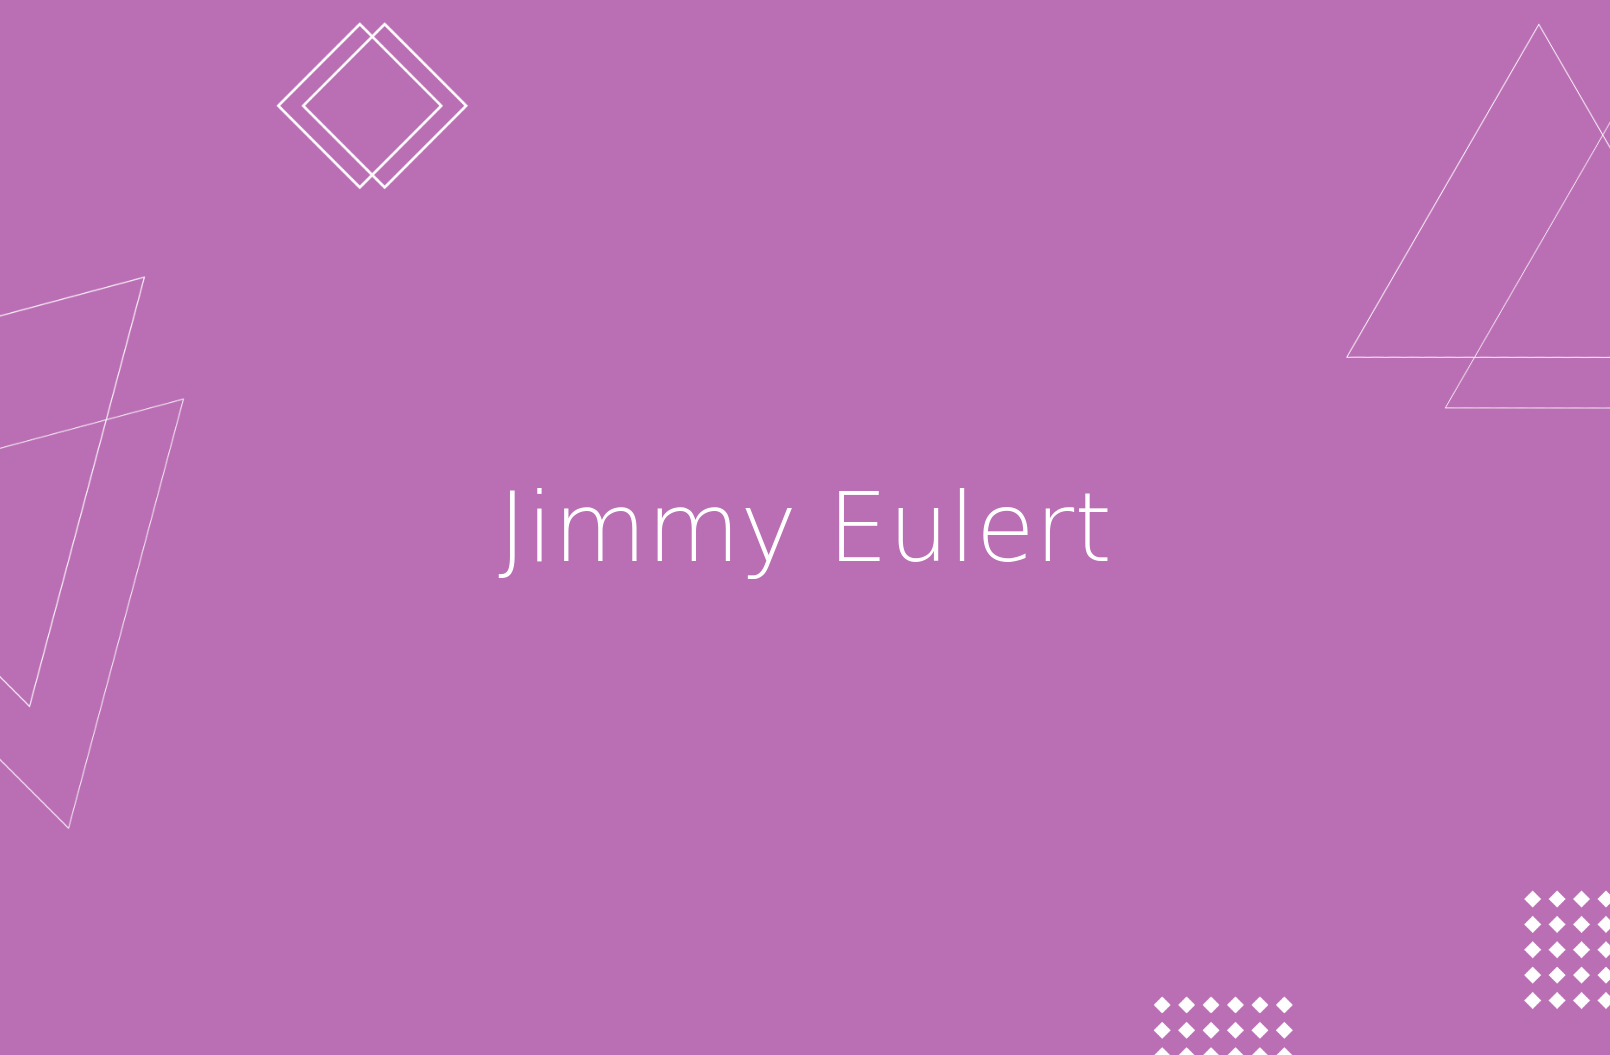 Biografía de Jimmy Eulert